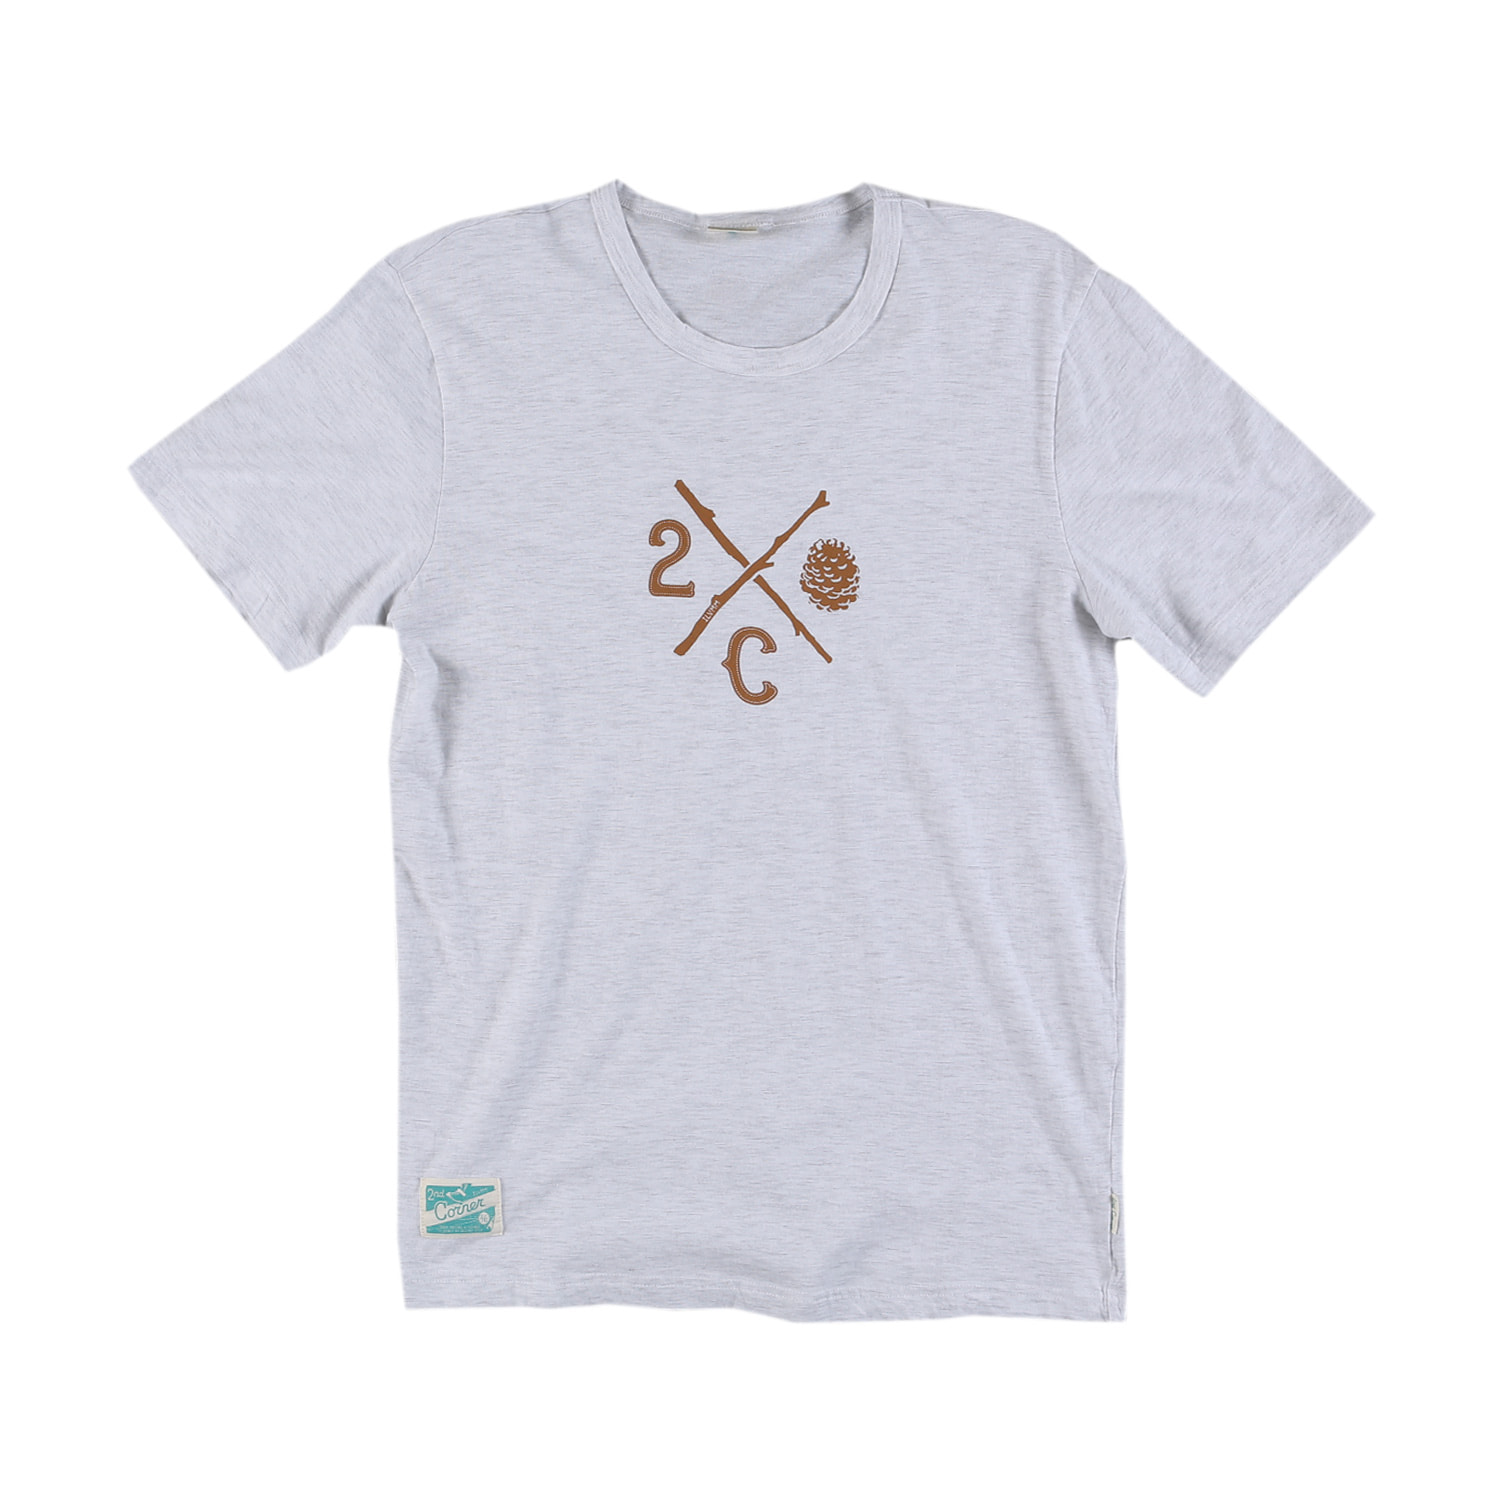 세컨드코너 2C 남성 반팔 티셔츠 / 그래픽 티셔츠 / 라운드넥 반팔티 Pinecone - White